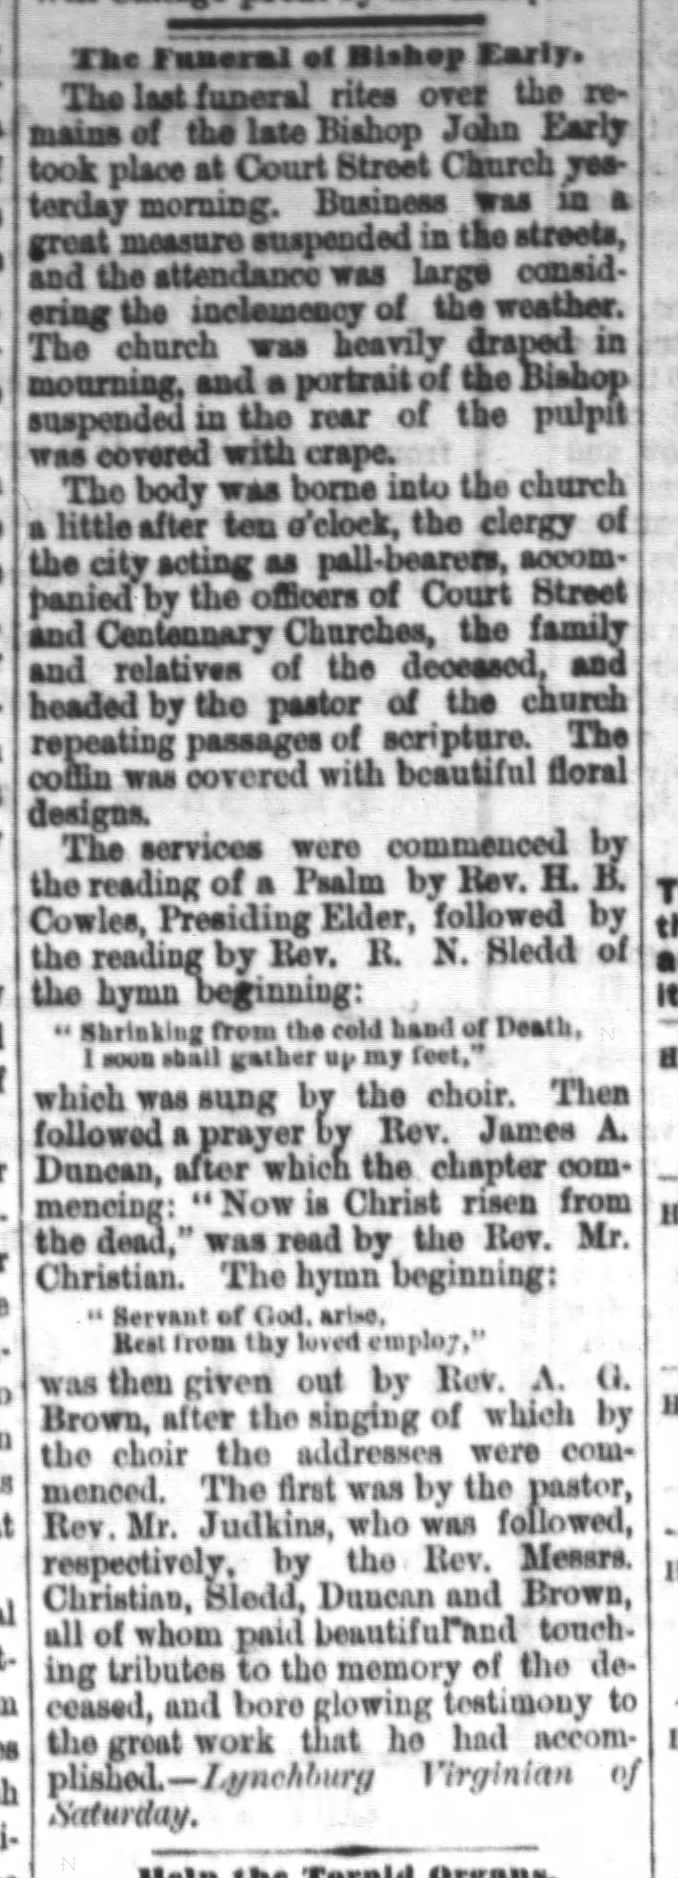 Funeral of Bishop John Early (1786-1873) at Lynchburg, VA